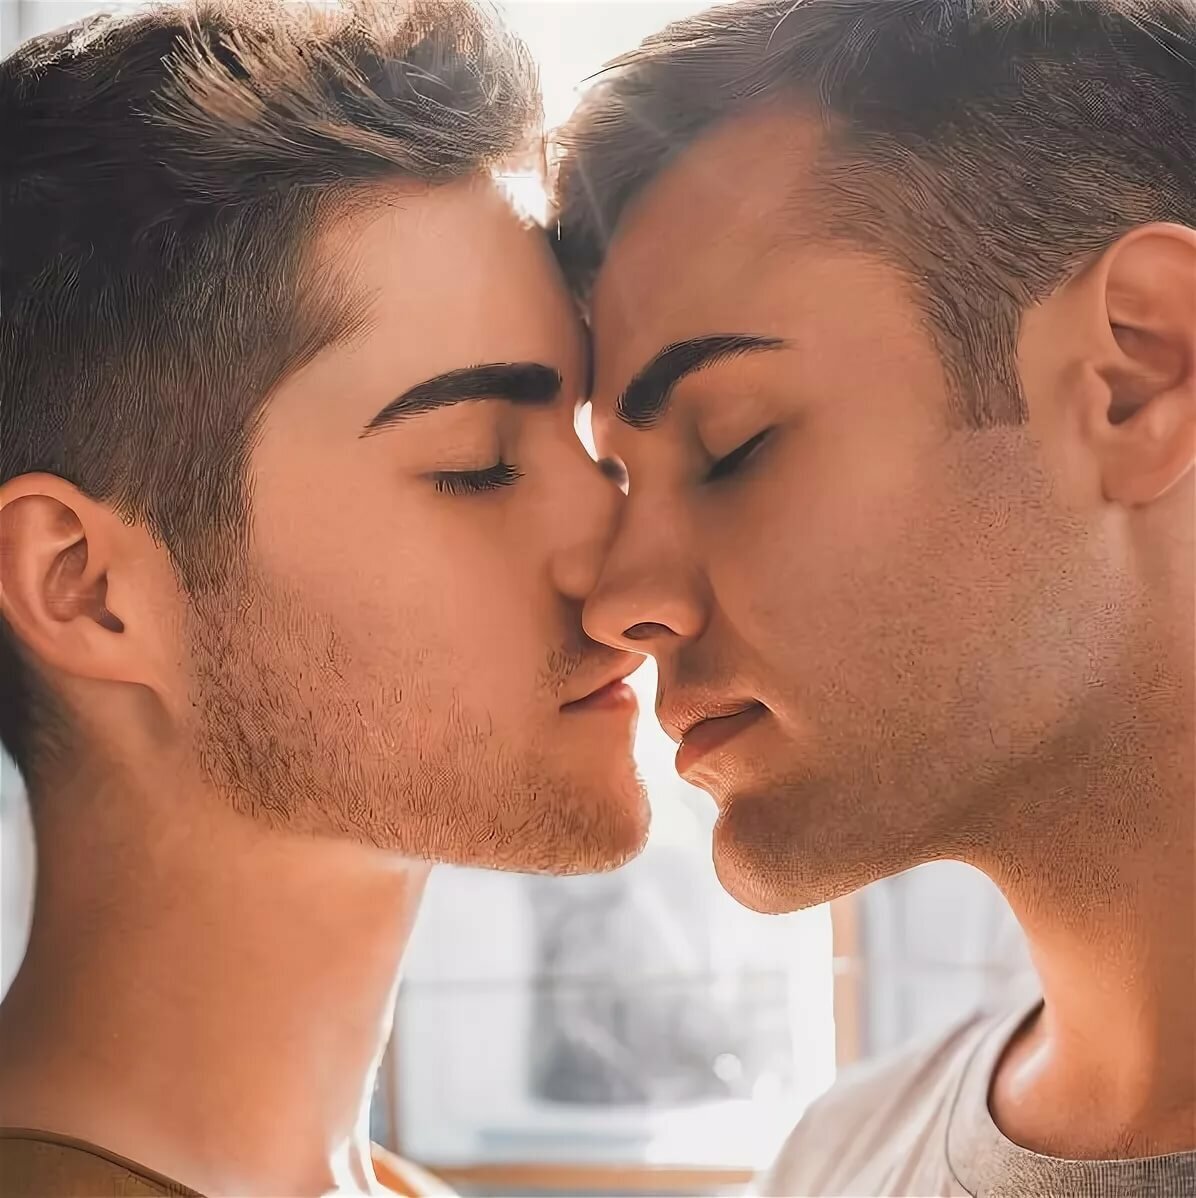 геи целуются на фото фото 117